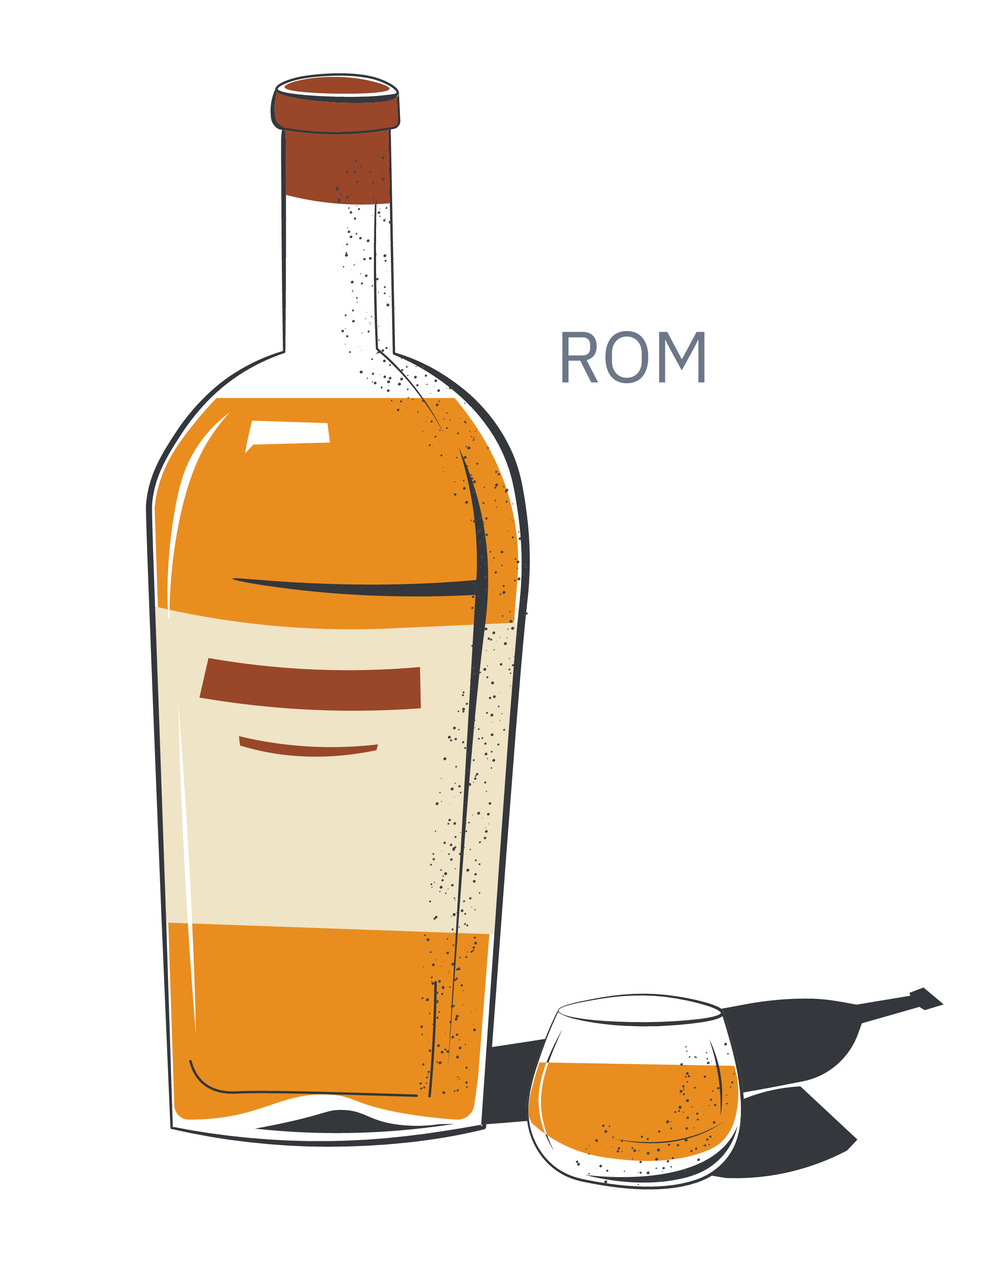 酒精饮料倒入小玻璃杯和带有标签的瓶子里用于酒吧和饮酒场所的产品波旁威士忌或朗姆酒饮料生产餐厅或酒吧的菜单平面样式的向量瓶装和玻璃杯中的朗姆酒酒精饮料矢量图形